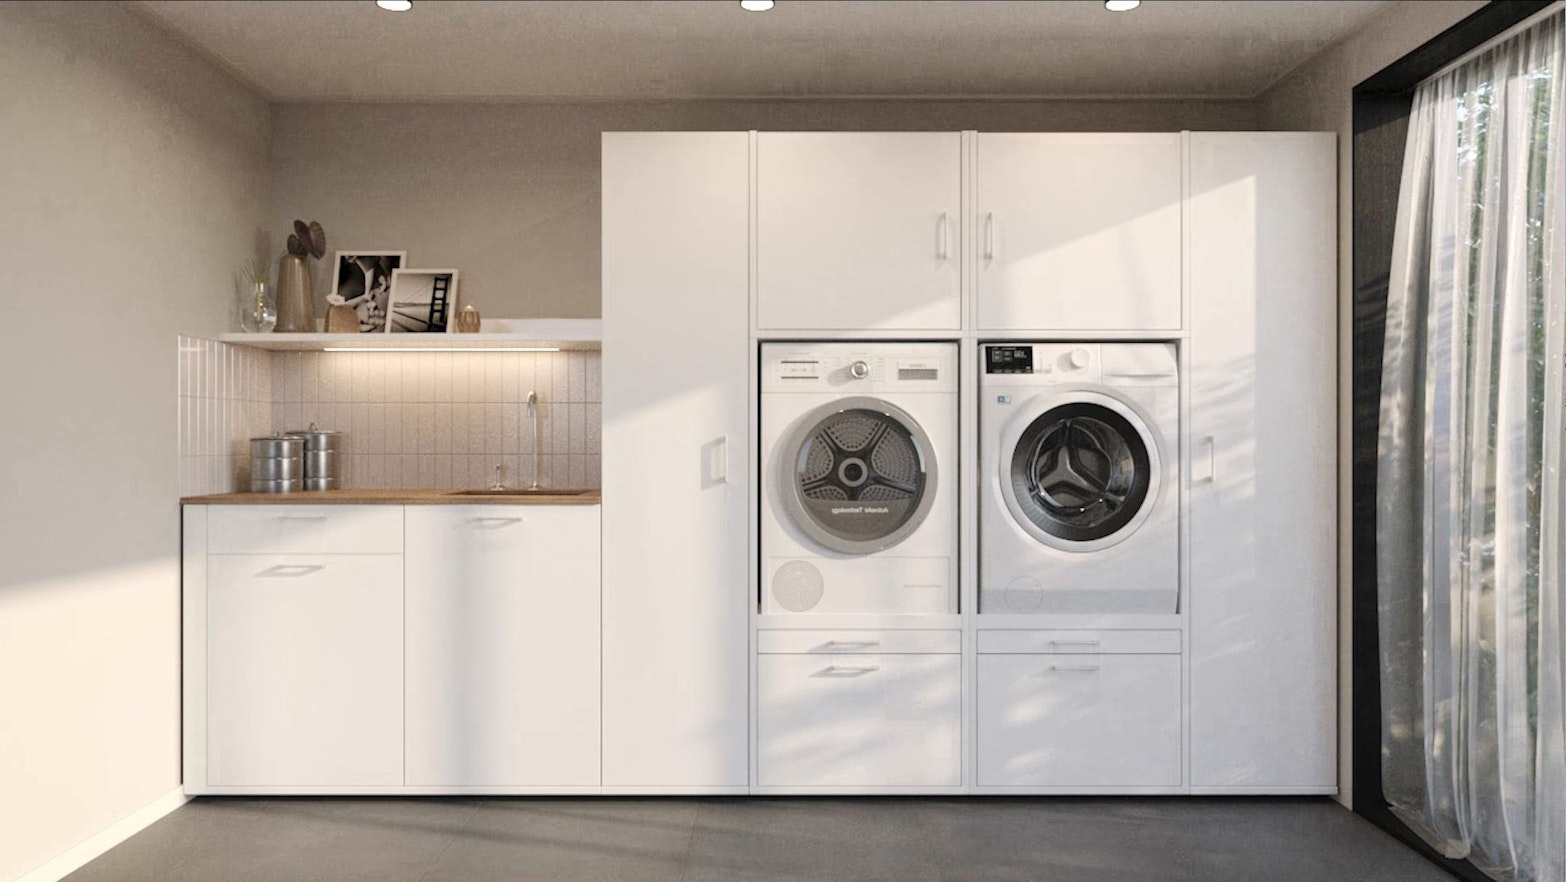 Sicherer Waschmaschinenschrank mit praktischem Waschbecken für die Waschküche.  Praktische Waschmaschinenerhöhung für komfortables Wäschewaschen..